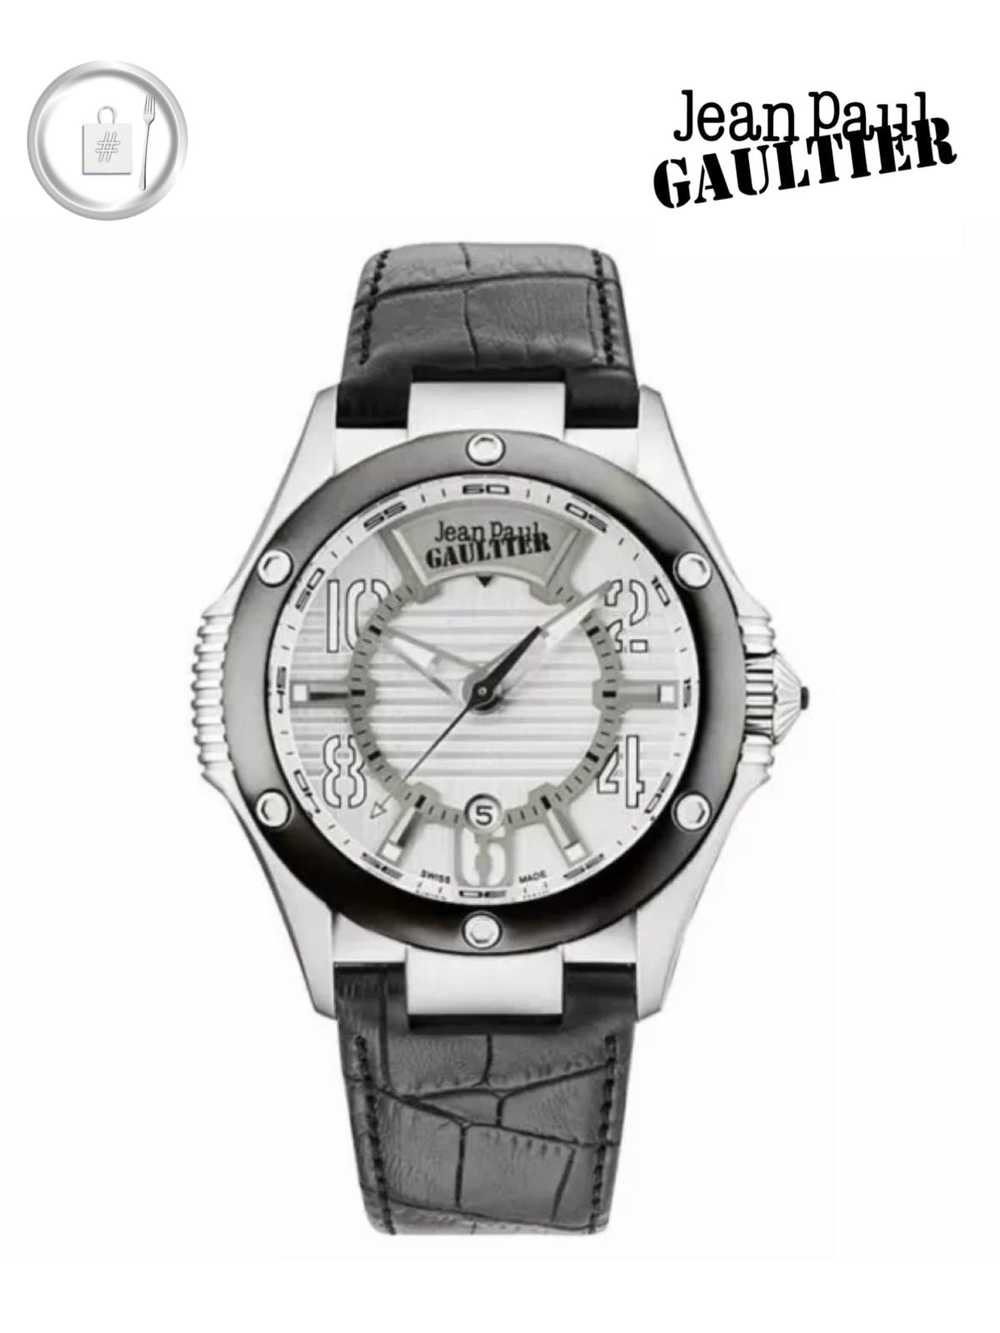 Jean Paul Gaultier Crocodile-effect silver watch - image 1